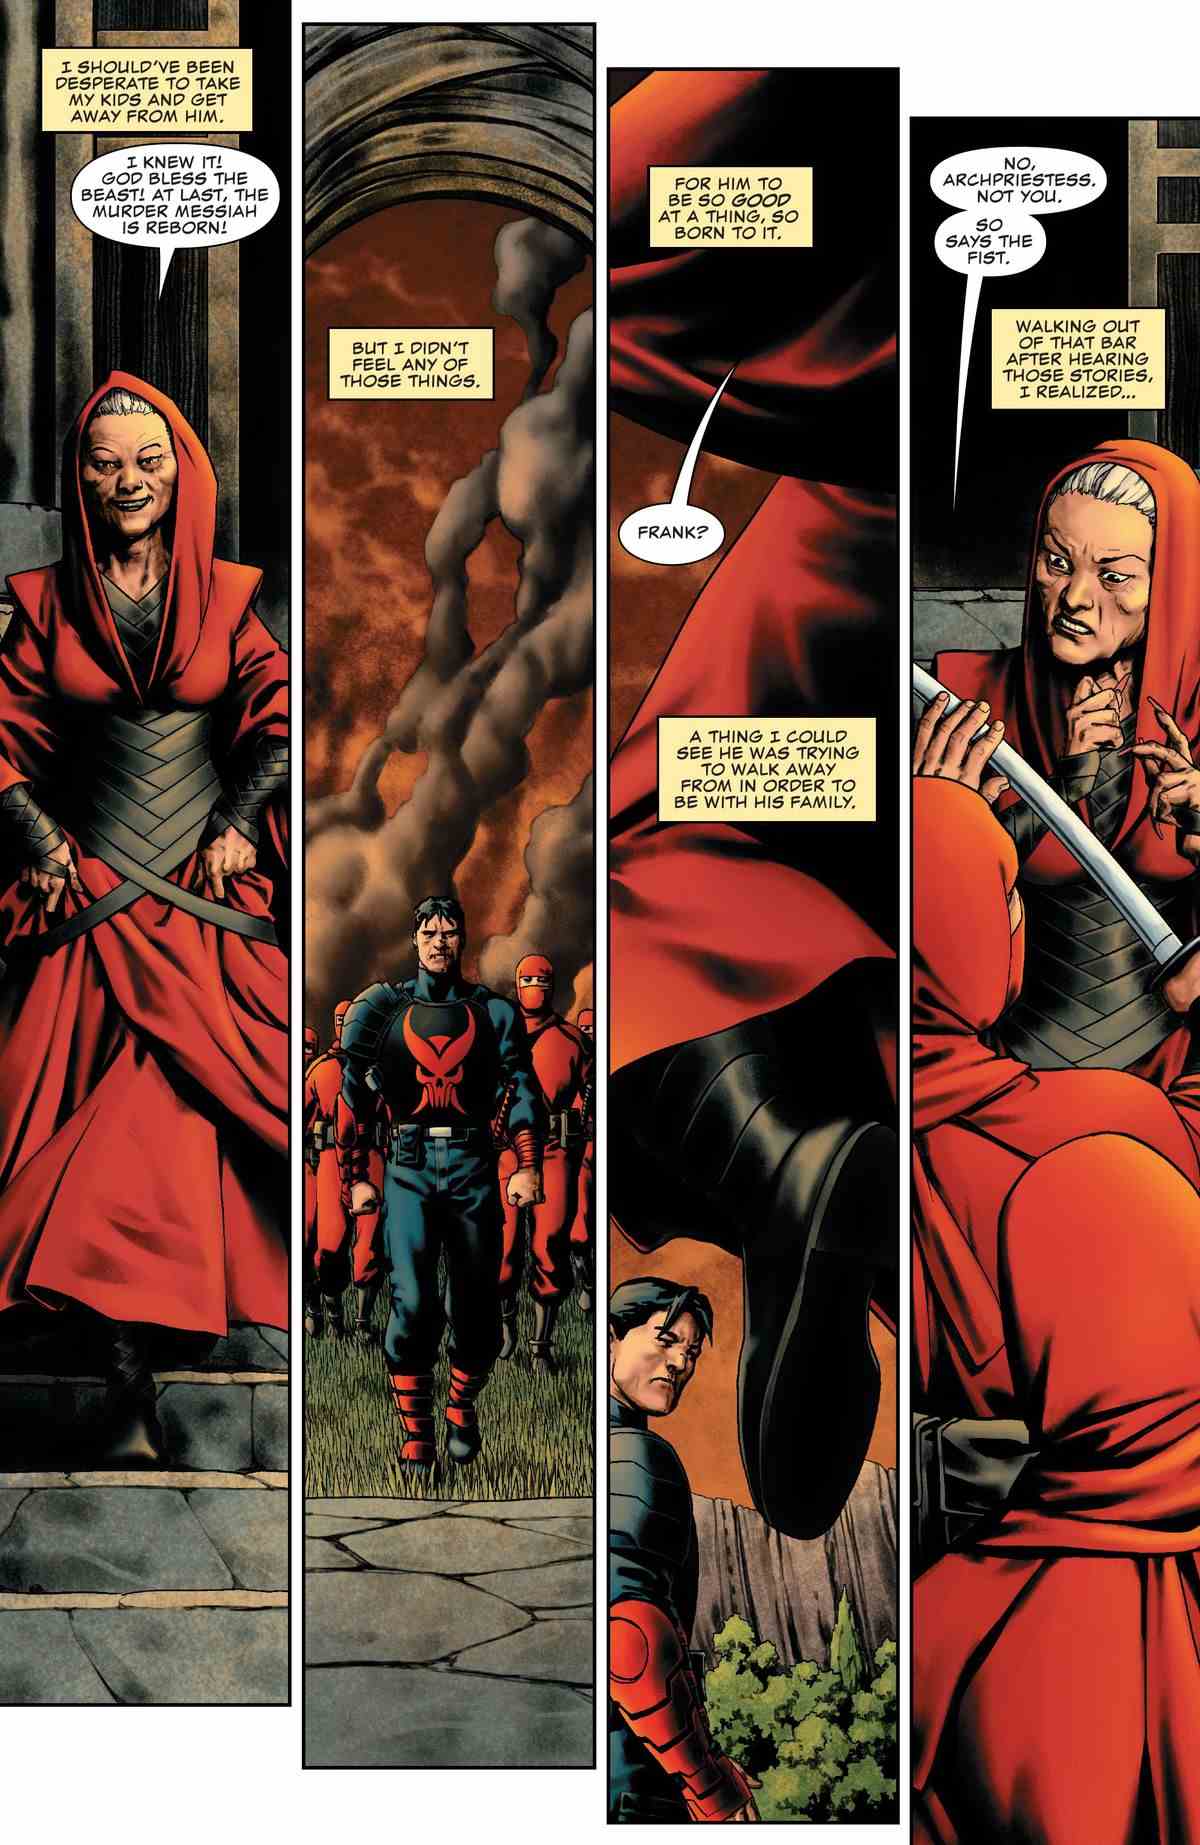 Les ninjas du Punisher empêchent la grande prêtresse de la Main de s'approcher de lui.  Dans la narration, Maria Castle dit qu'elle aurait dû avoir peur de son mari après avoir découvert à quel point son mari était doué pour le meurtre.  Mais elle a vu qu'il essayait de le laisser derrière lui par amour pour sa famille, dans Punisher #9 (2023). 